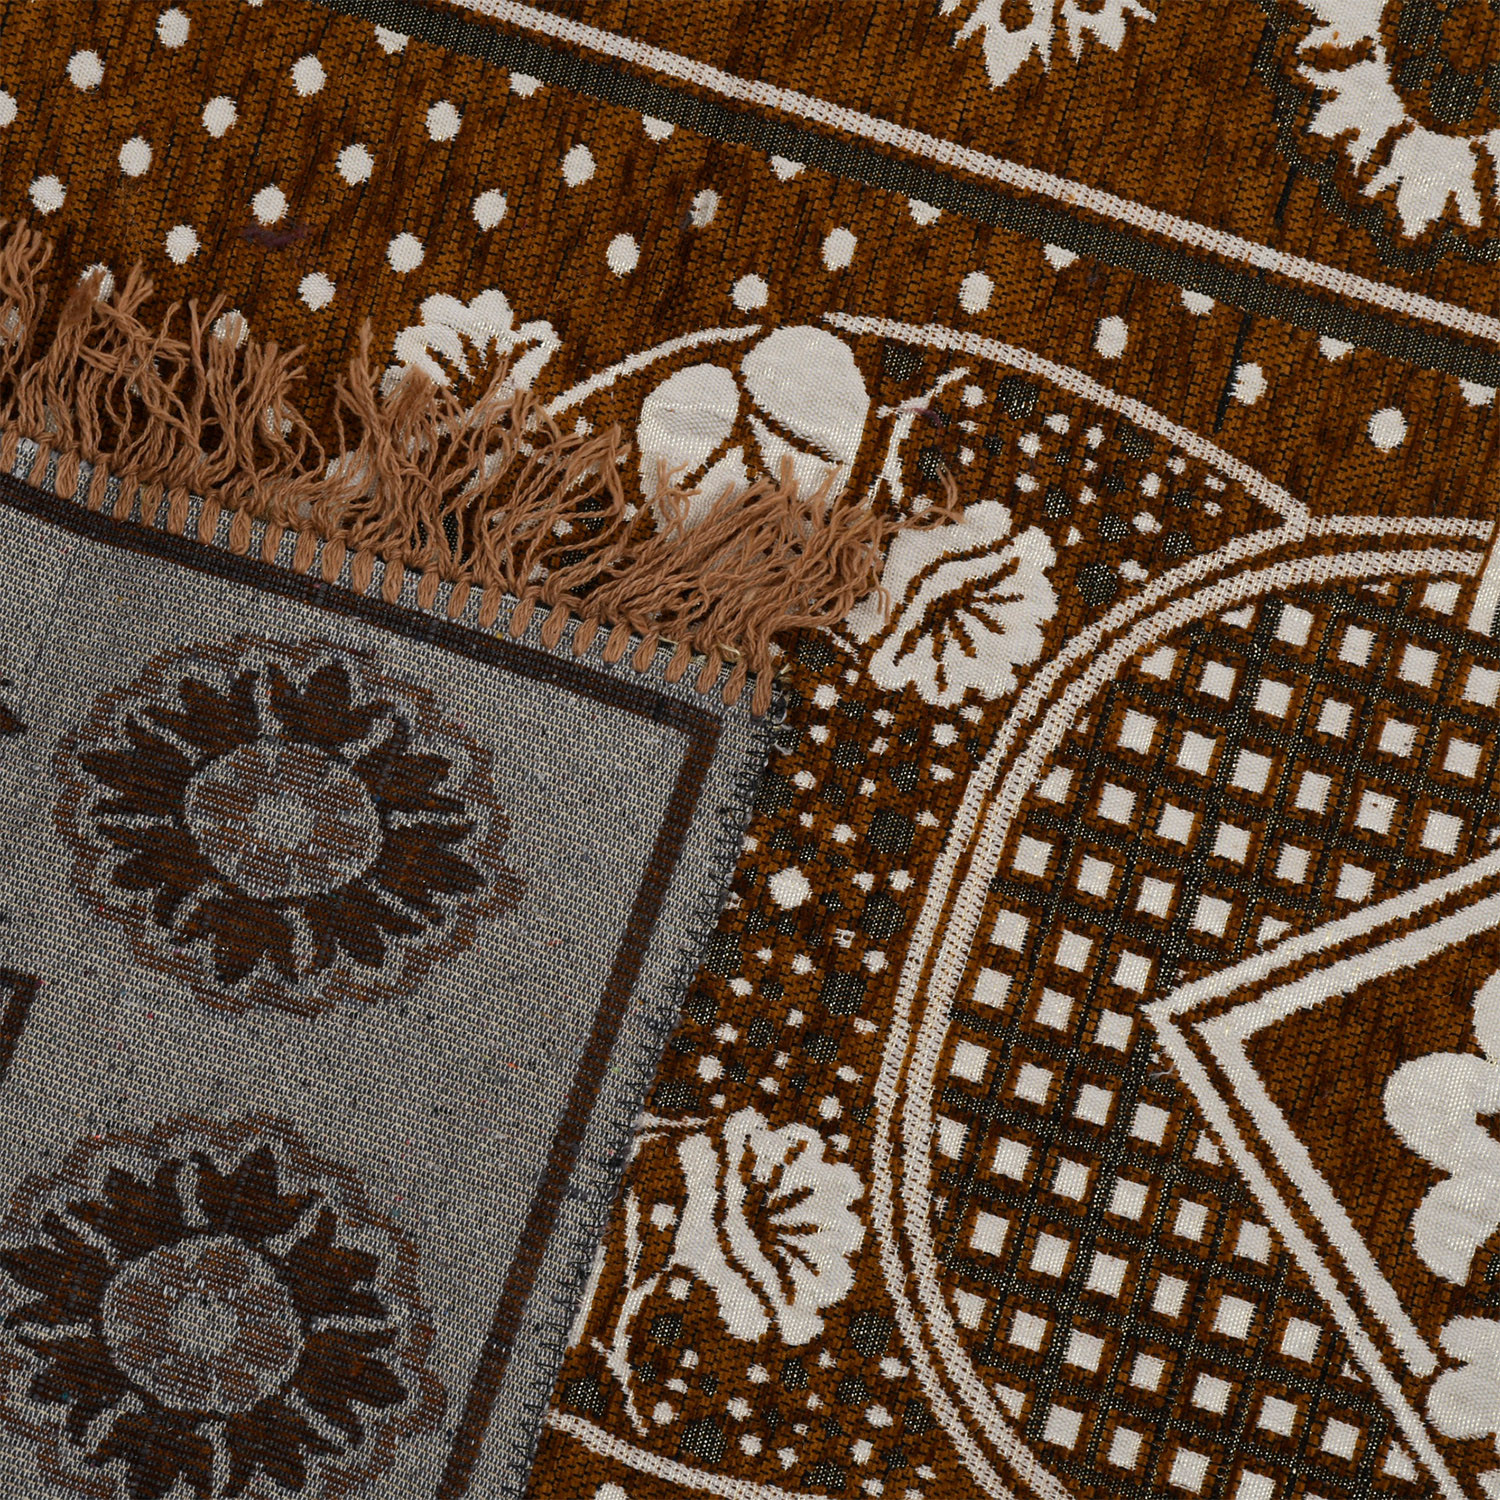 Kuber Industries Bed Side Runner|Velvet Decorative Anti Skid Floor Mat Runner|Flower Pattern for Hall, Kitchen, Living Room, 27 x 68 Inch ( Light Brown)